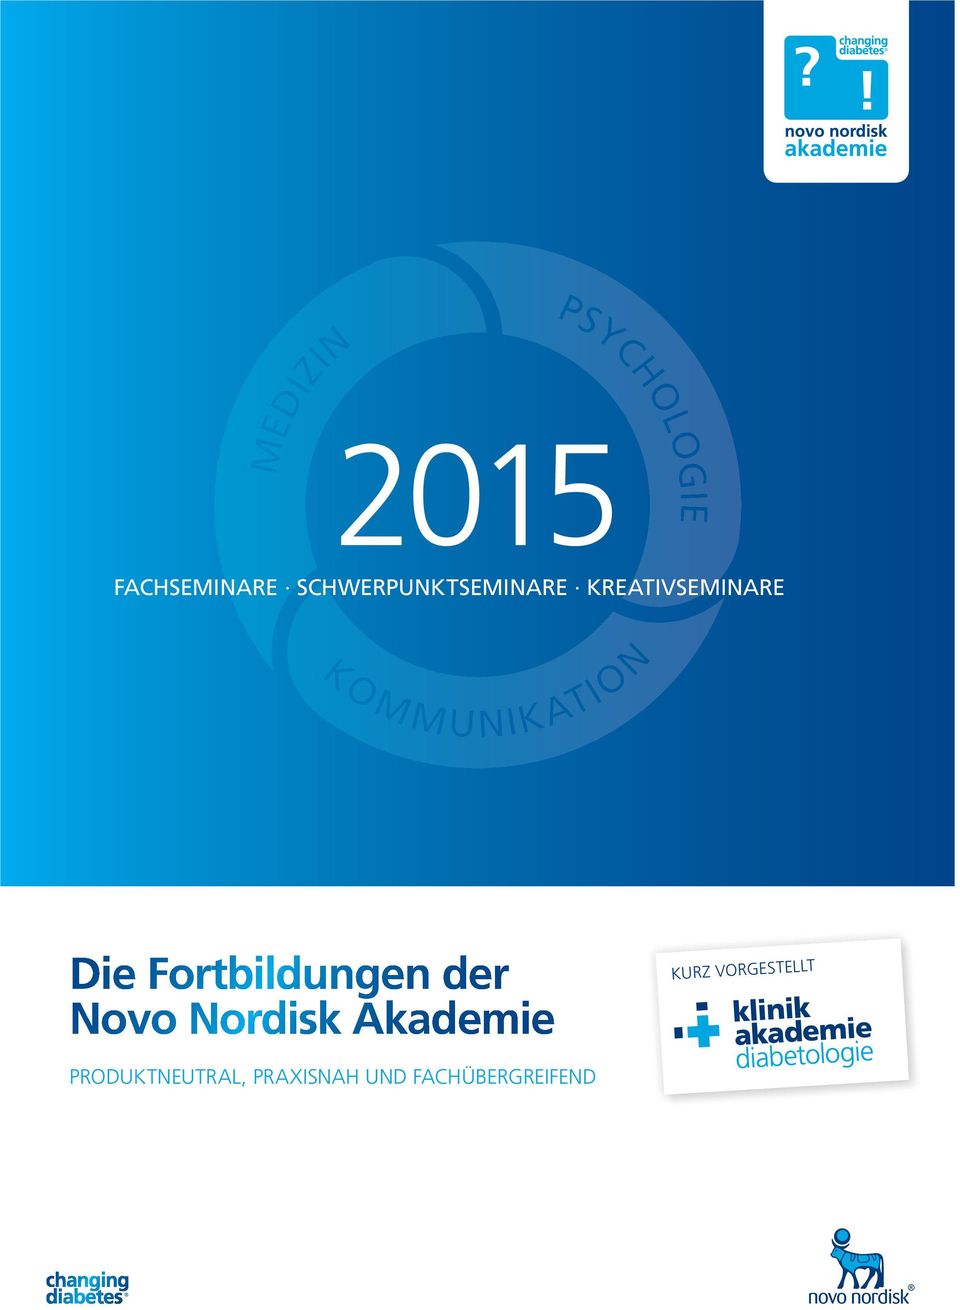 Novo Nordisk Akademie KURZ VORGESTELLT